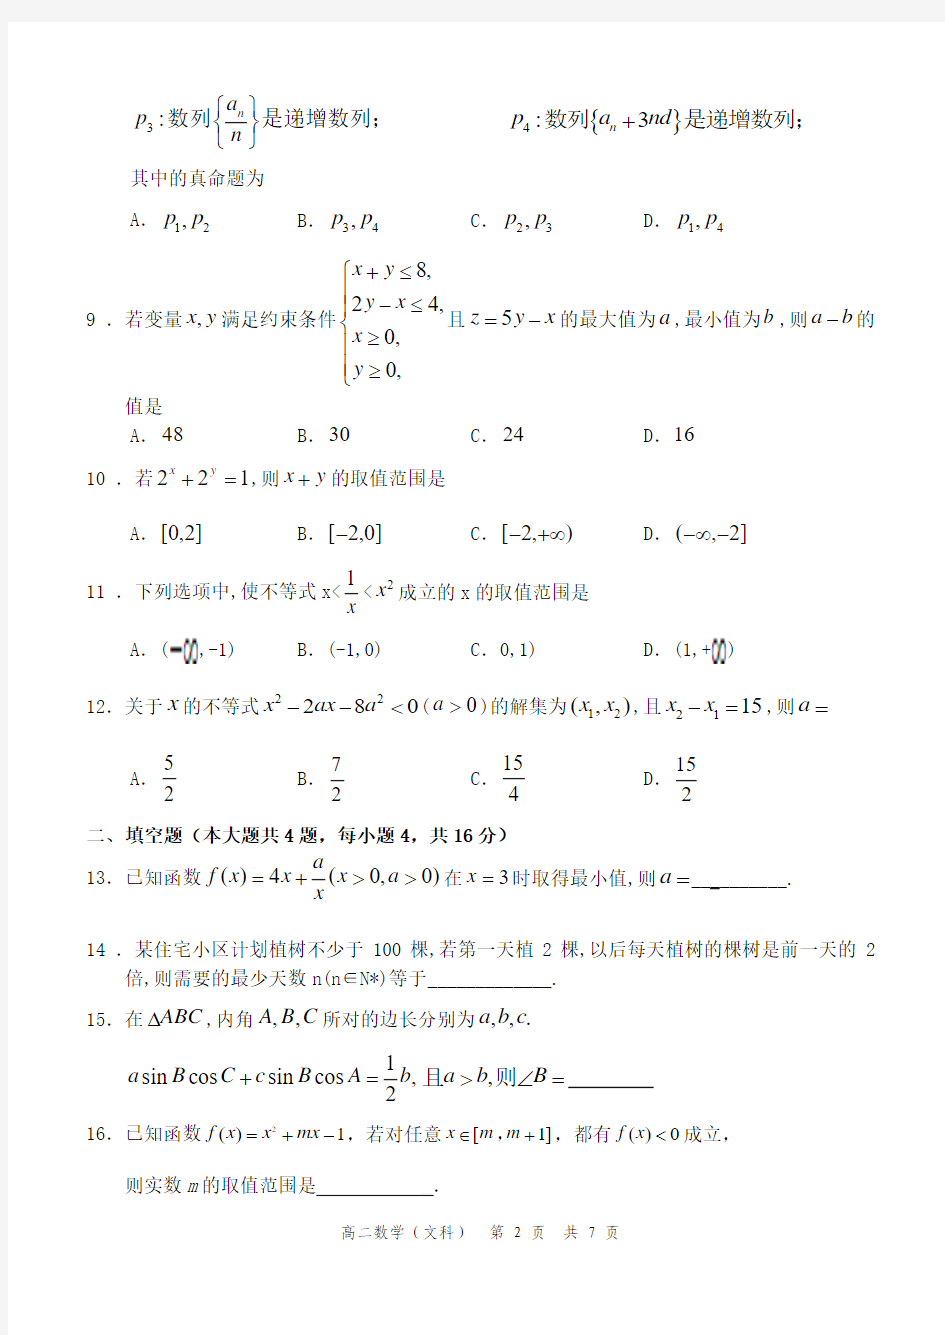 福州四中2014-2015第一学期期中考高二文科数学(必修5)模块考试试卷